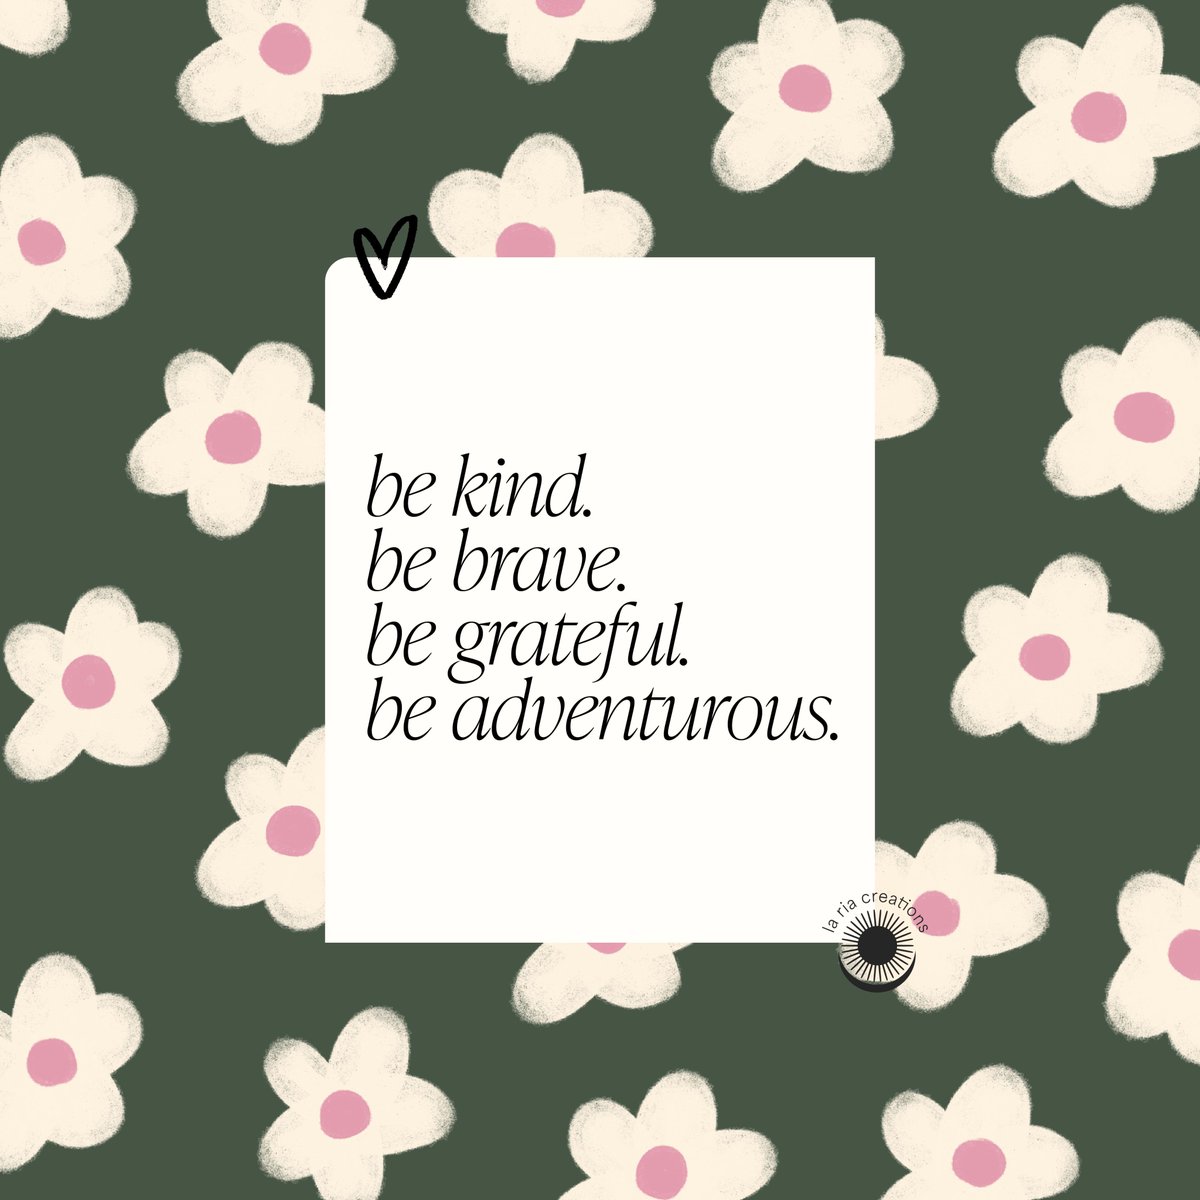 A little reminder 🧡 #quote #reminder #motivation #inspiration #art #flowers #bekind #kindness #grateful